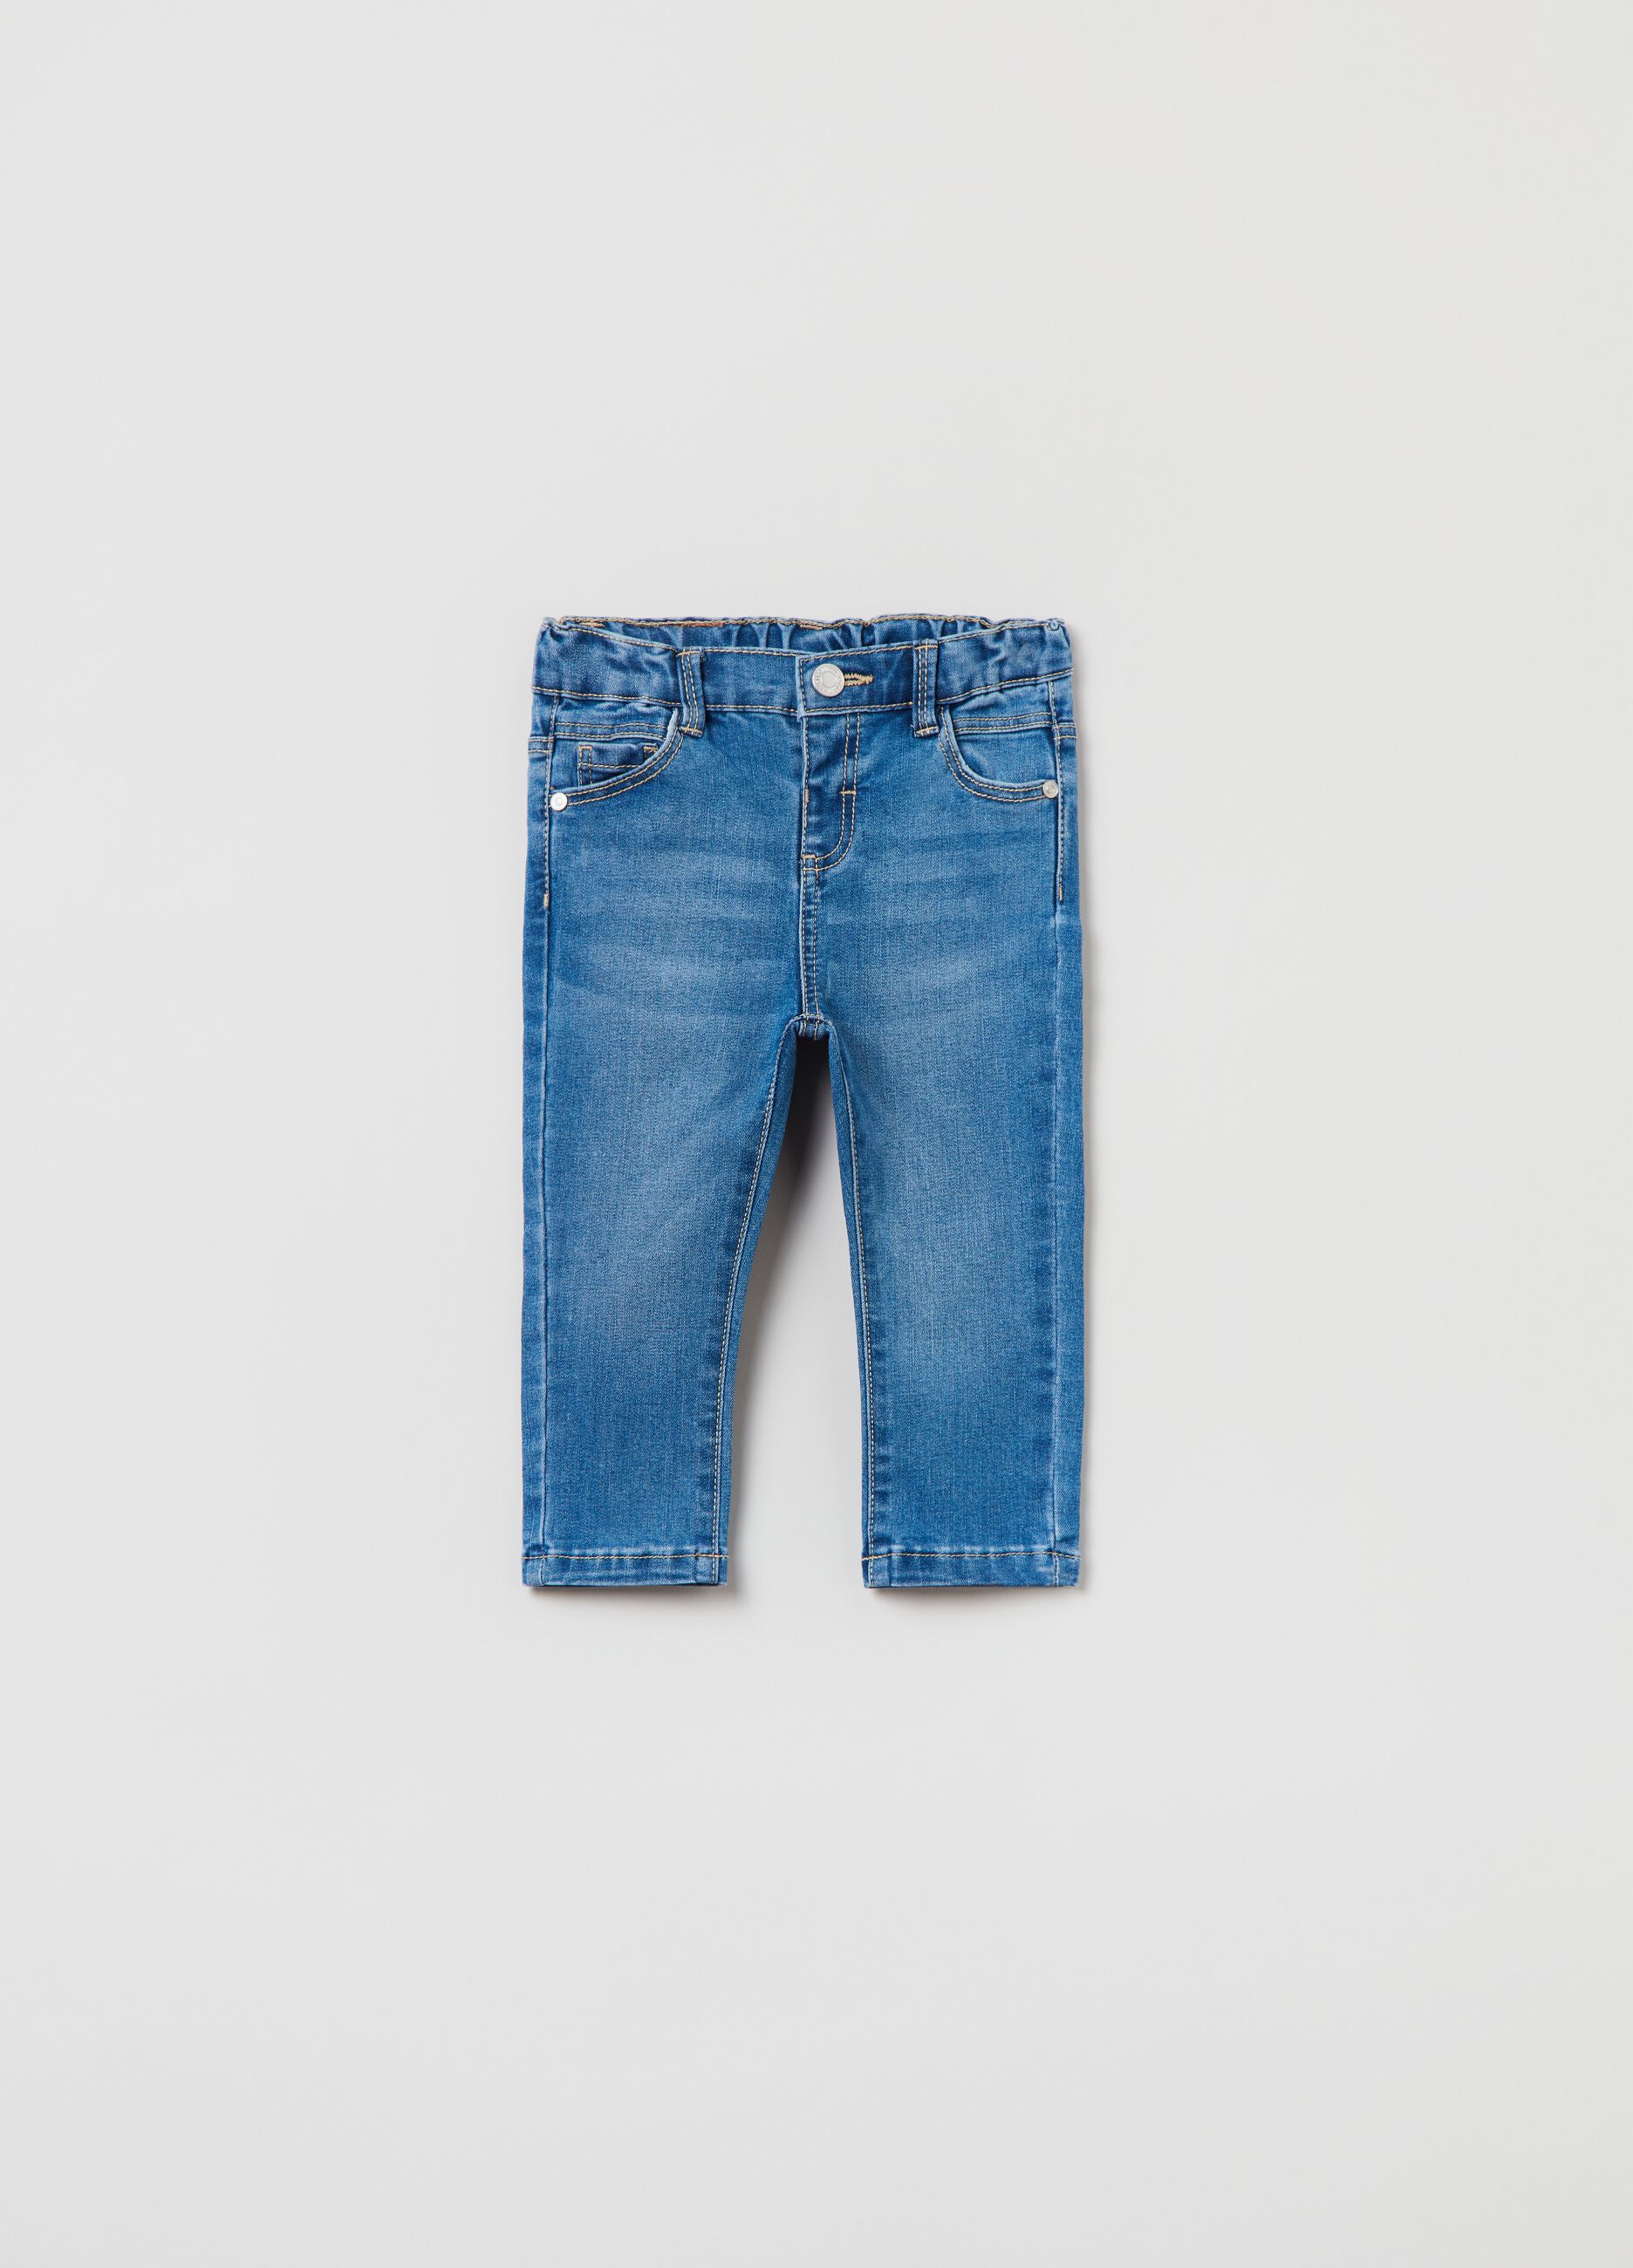 Five-pocket jeans.